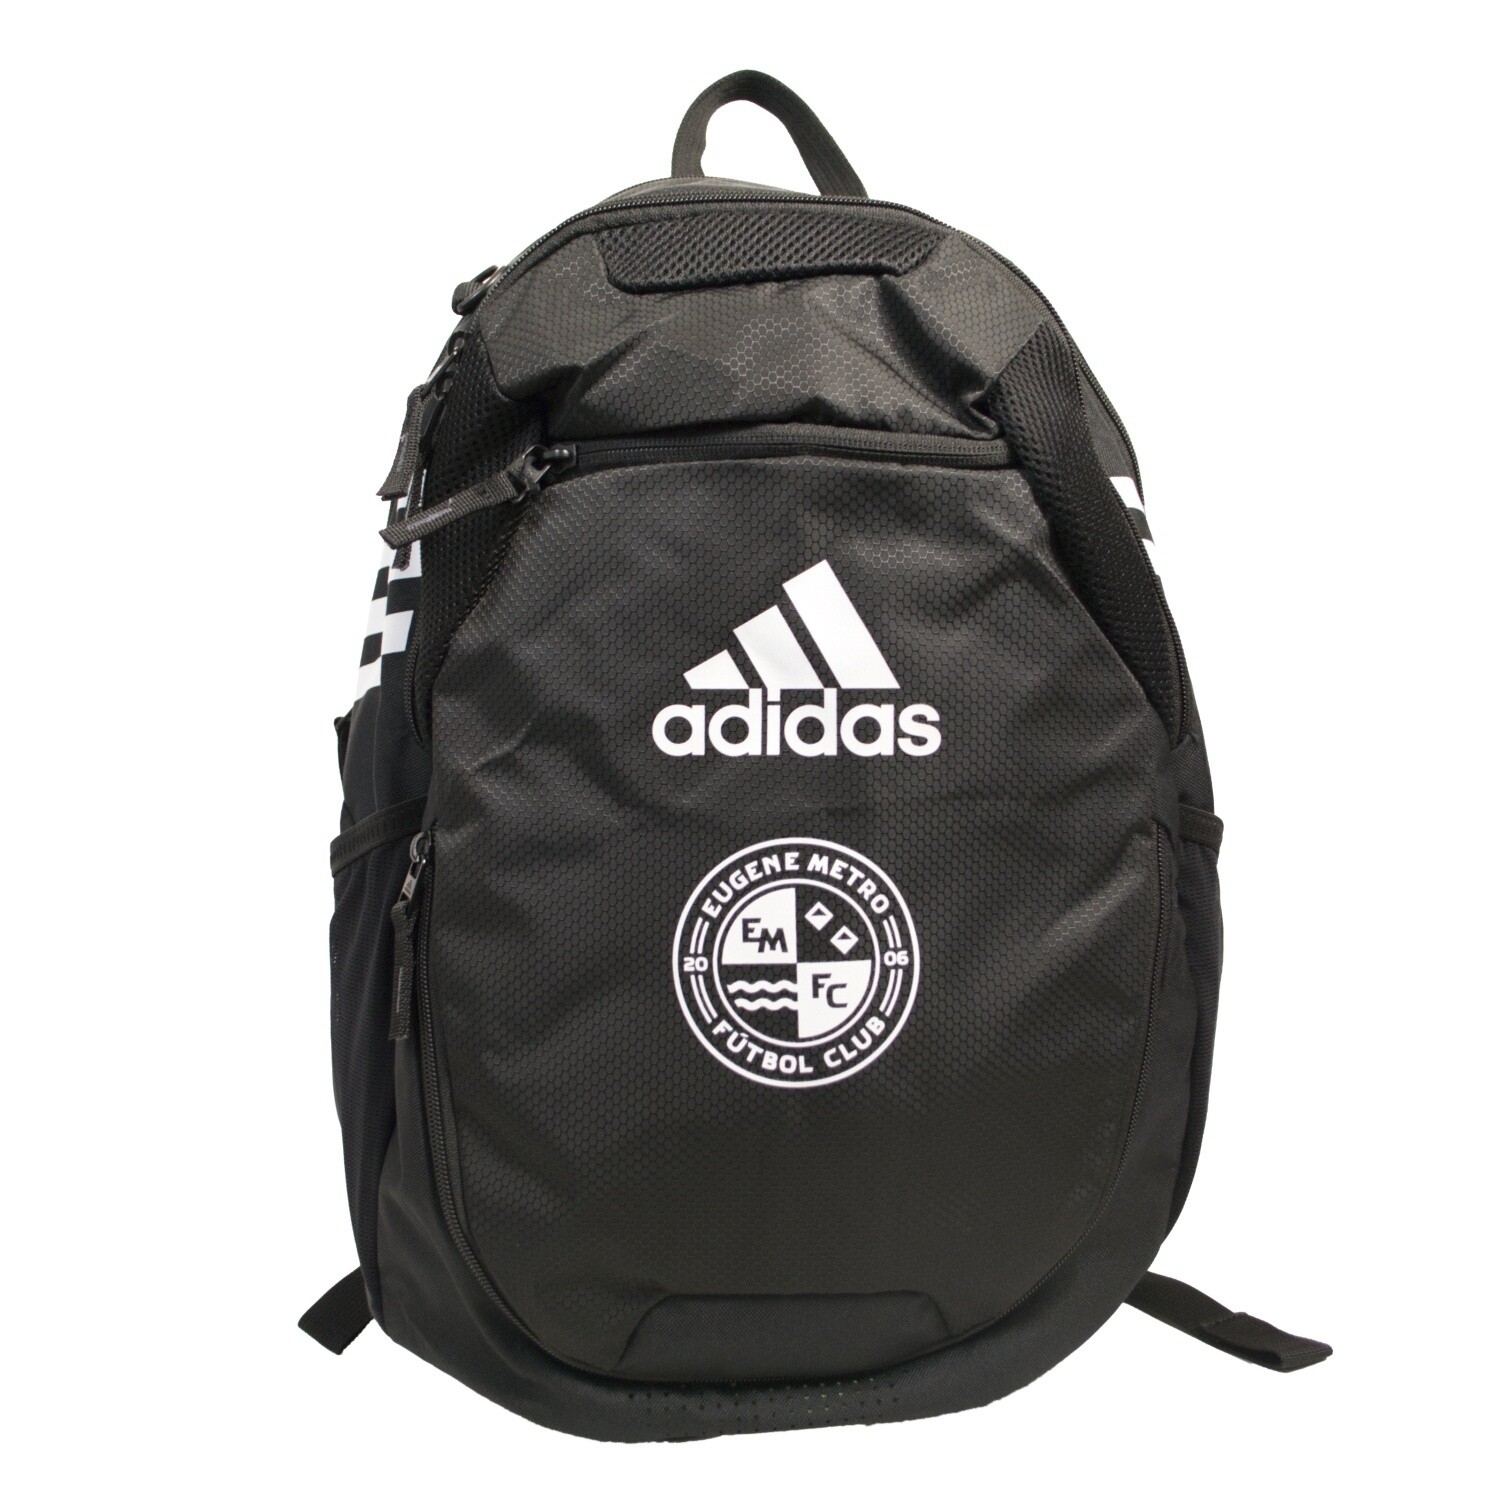 EMFC Backpack